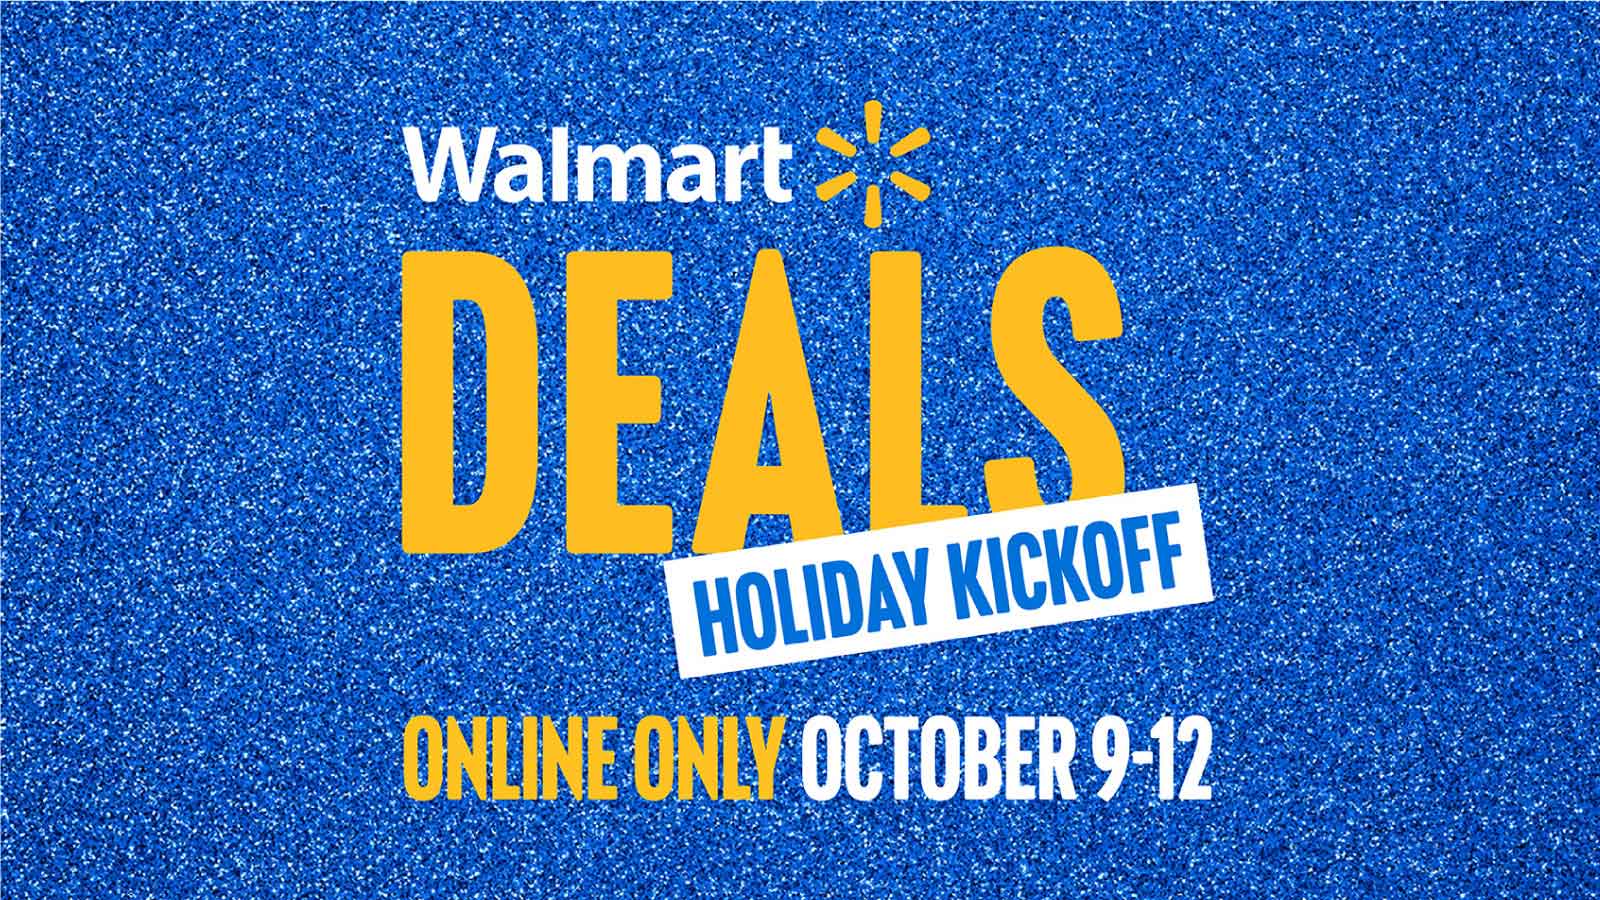 Walmart Holiday Deals Kickoff